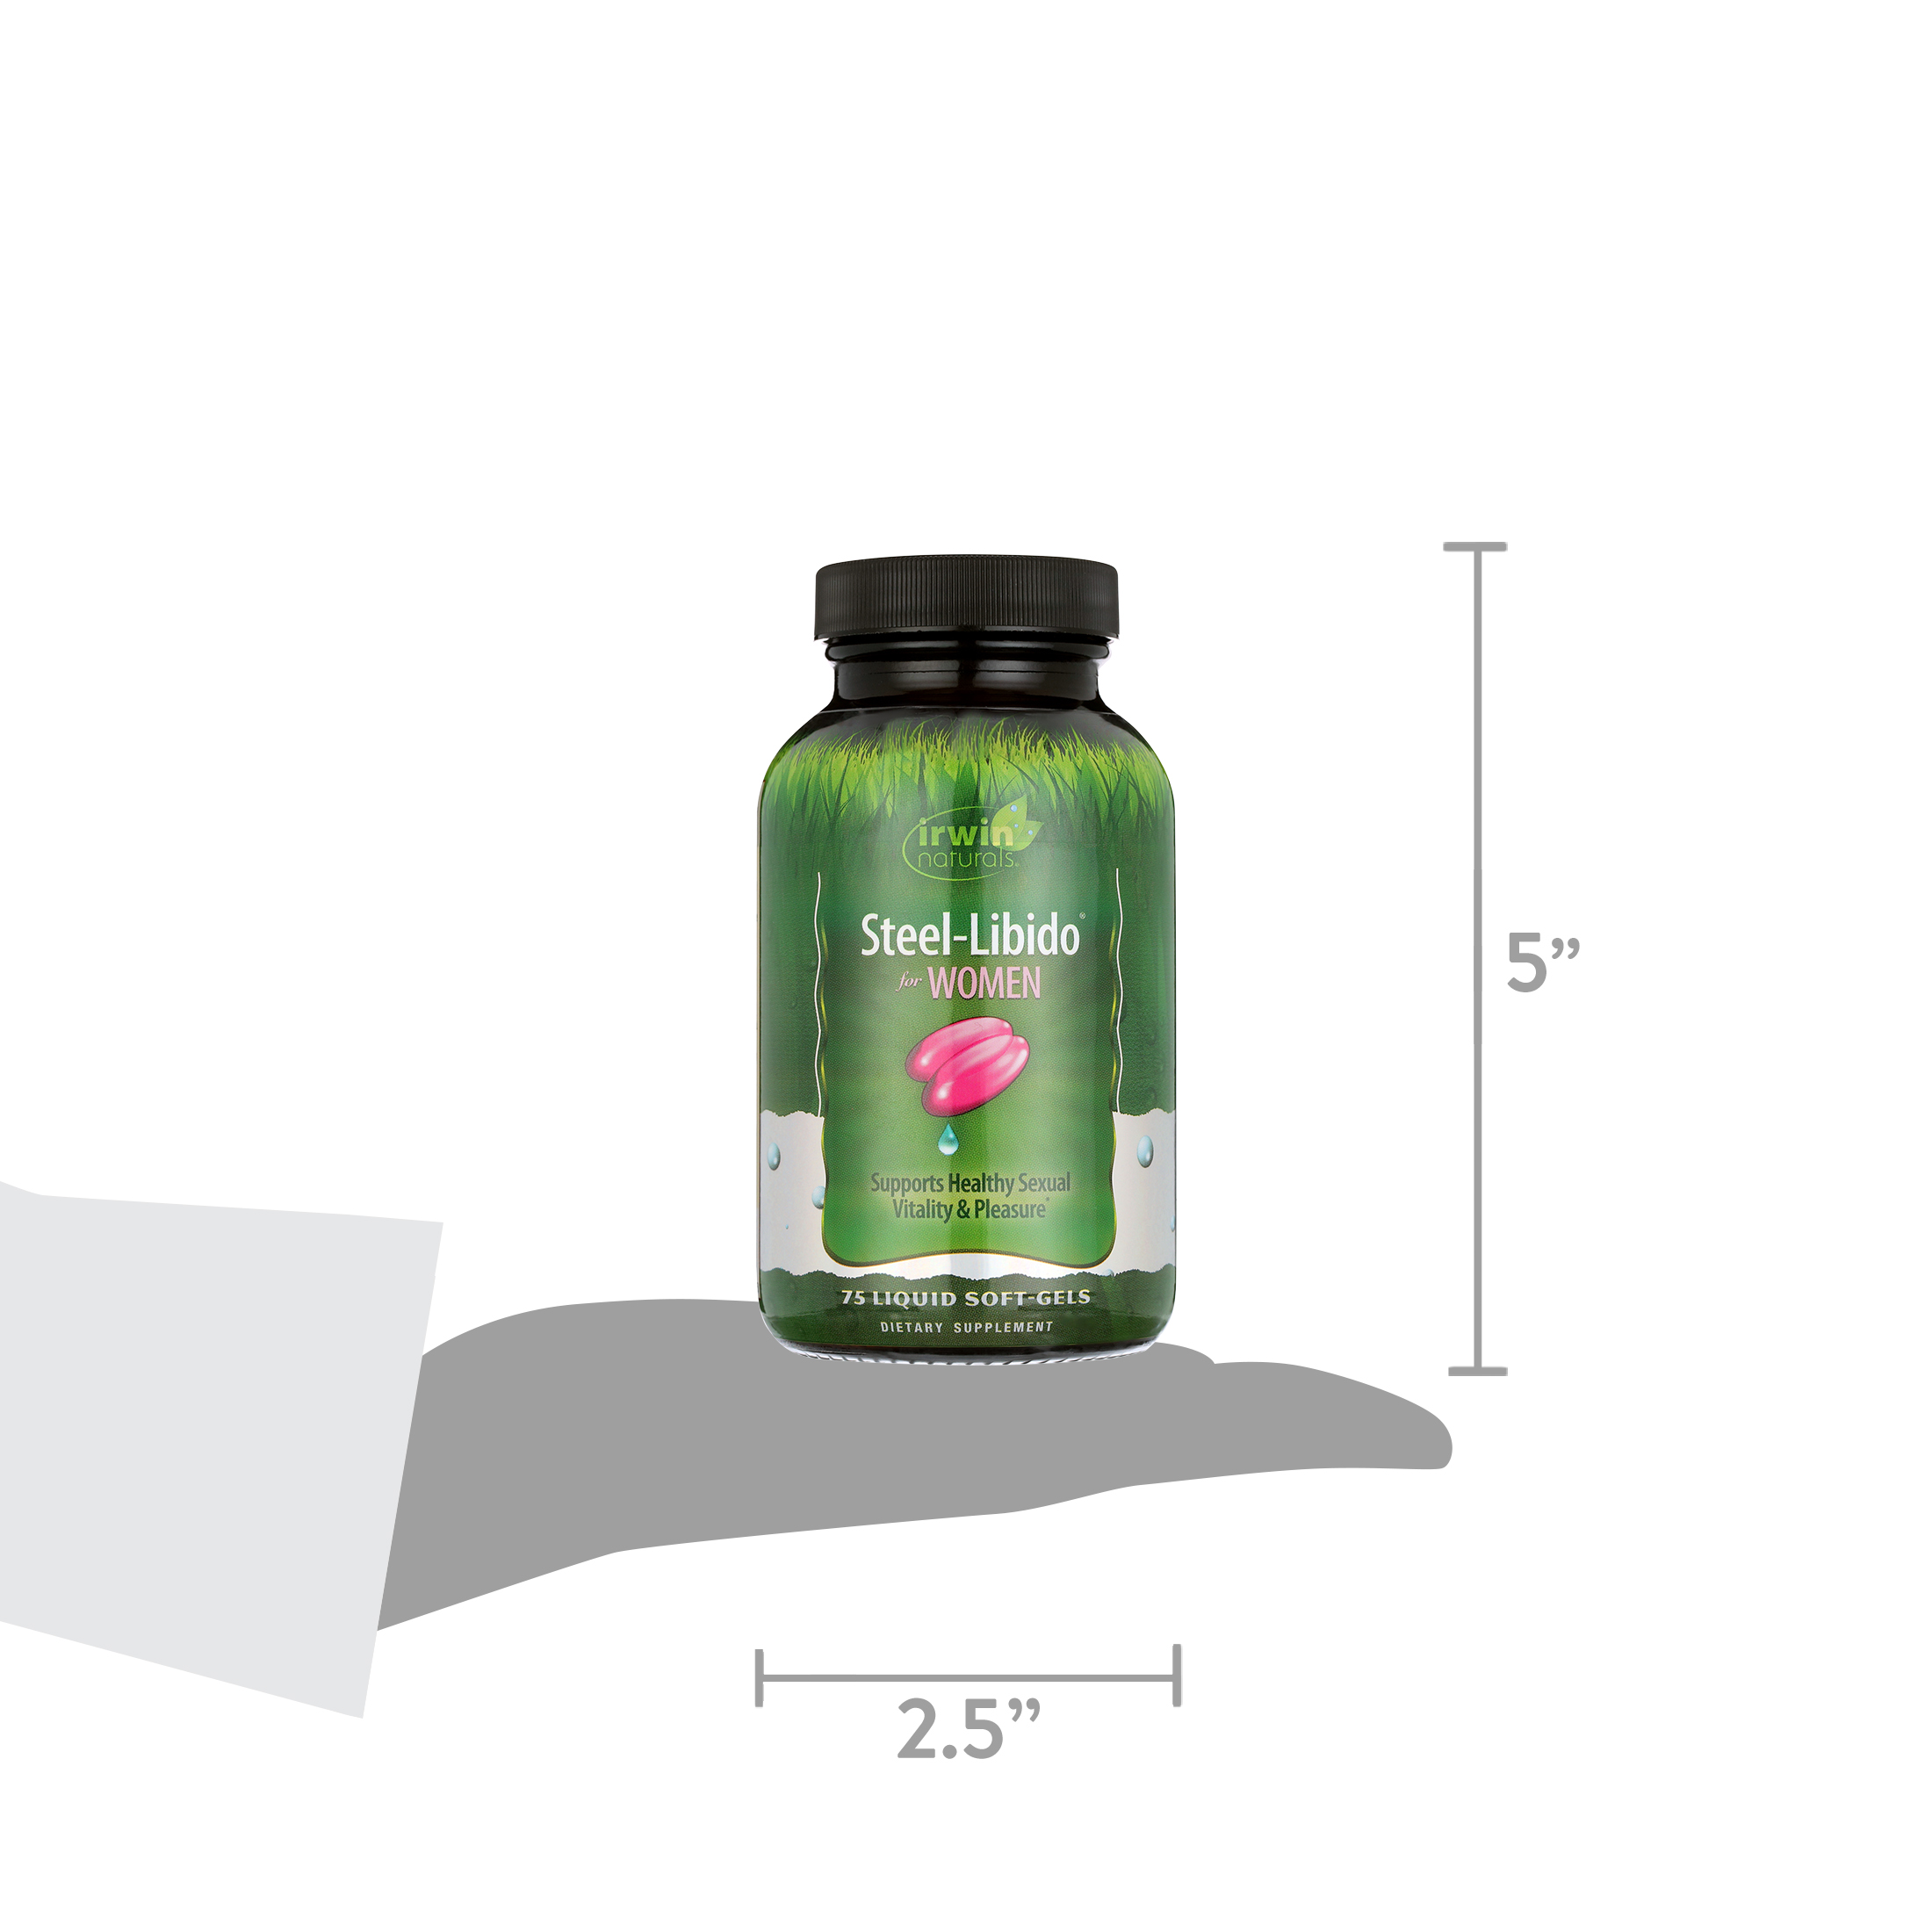 Irwin Naturals - Steel-Libido for Women, Dietary Supplement, 75 Liquid Softgels - image 6 of 6